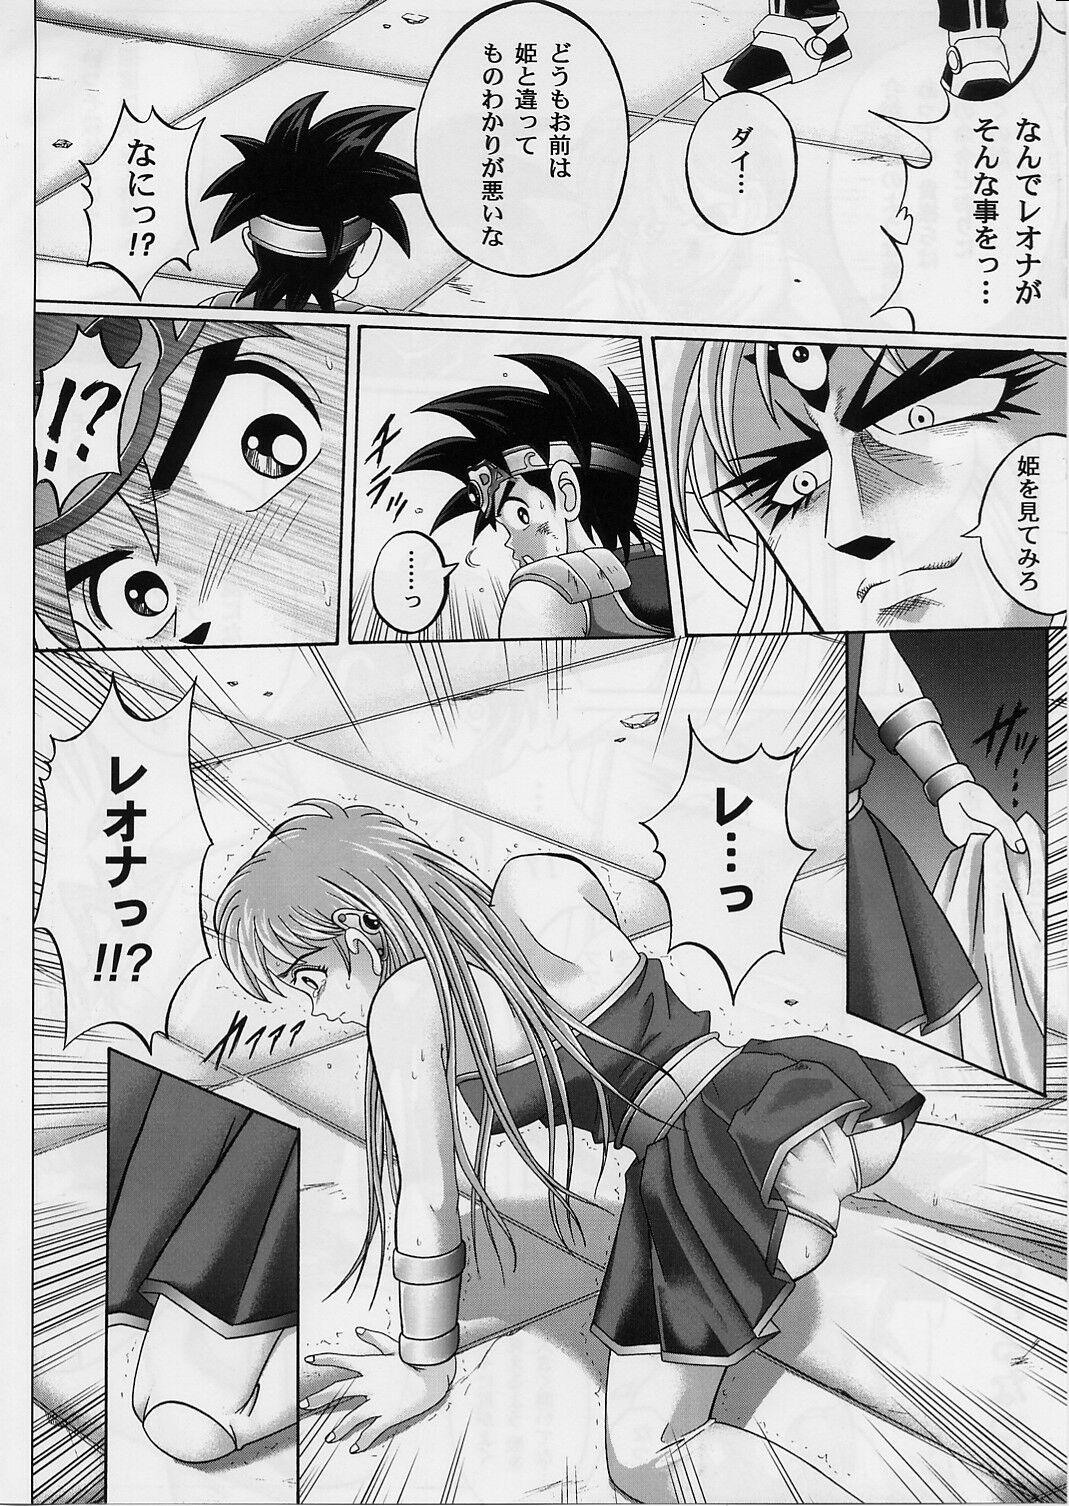 [Cyclone (Izumi, Reizei)] DIME ALLIANCE 2 (Dragon Quest Dai no Daibouken) page 7 full